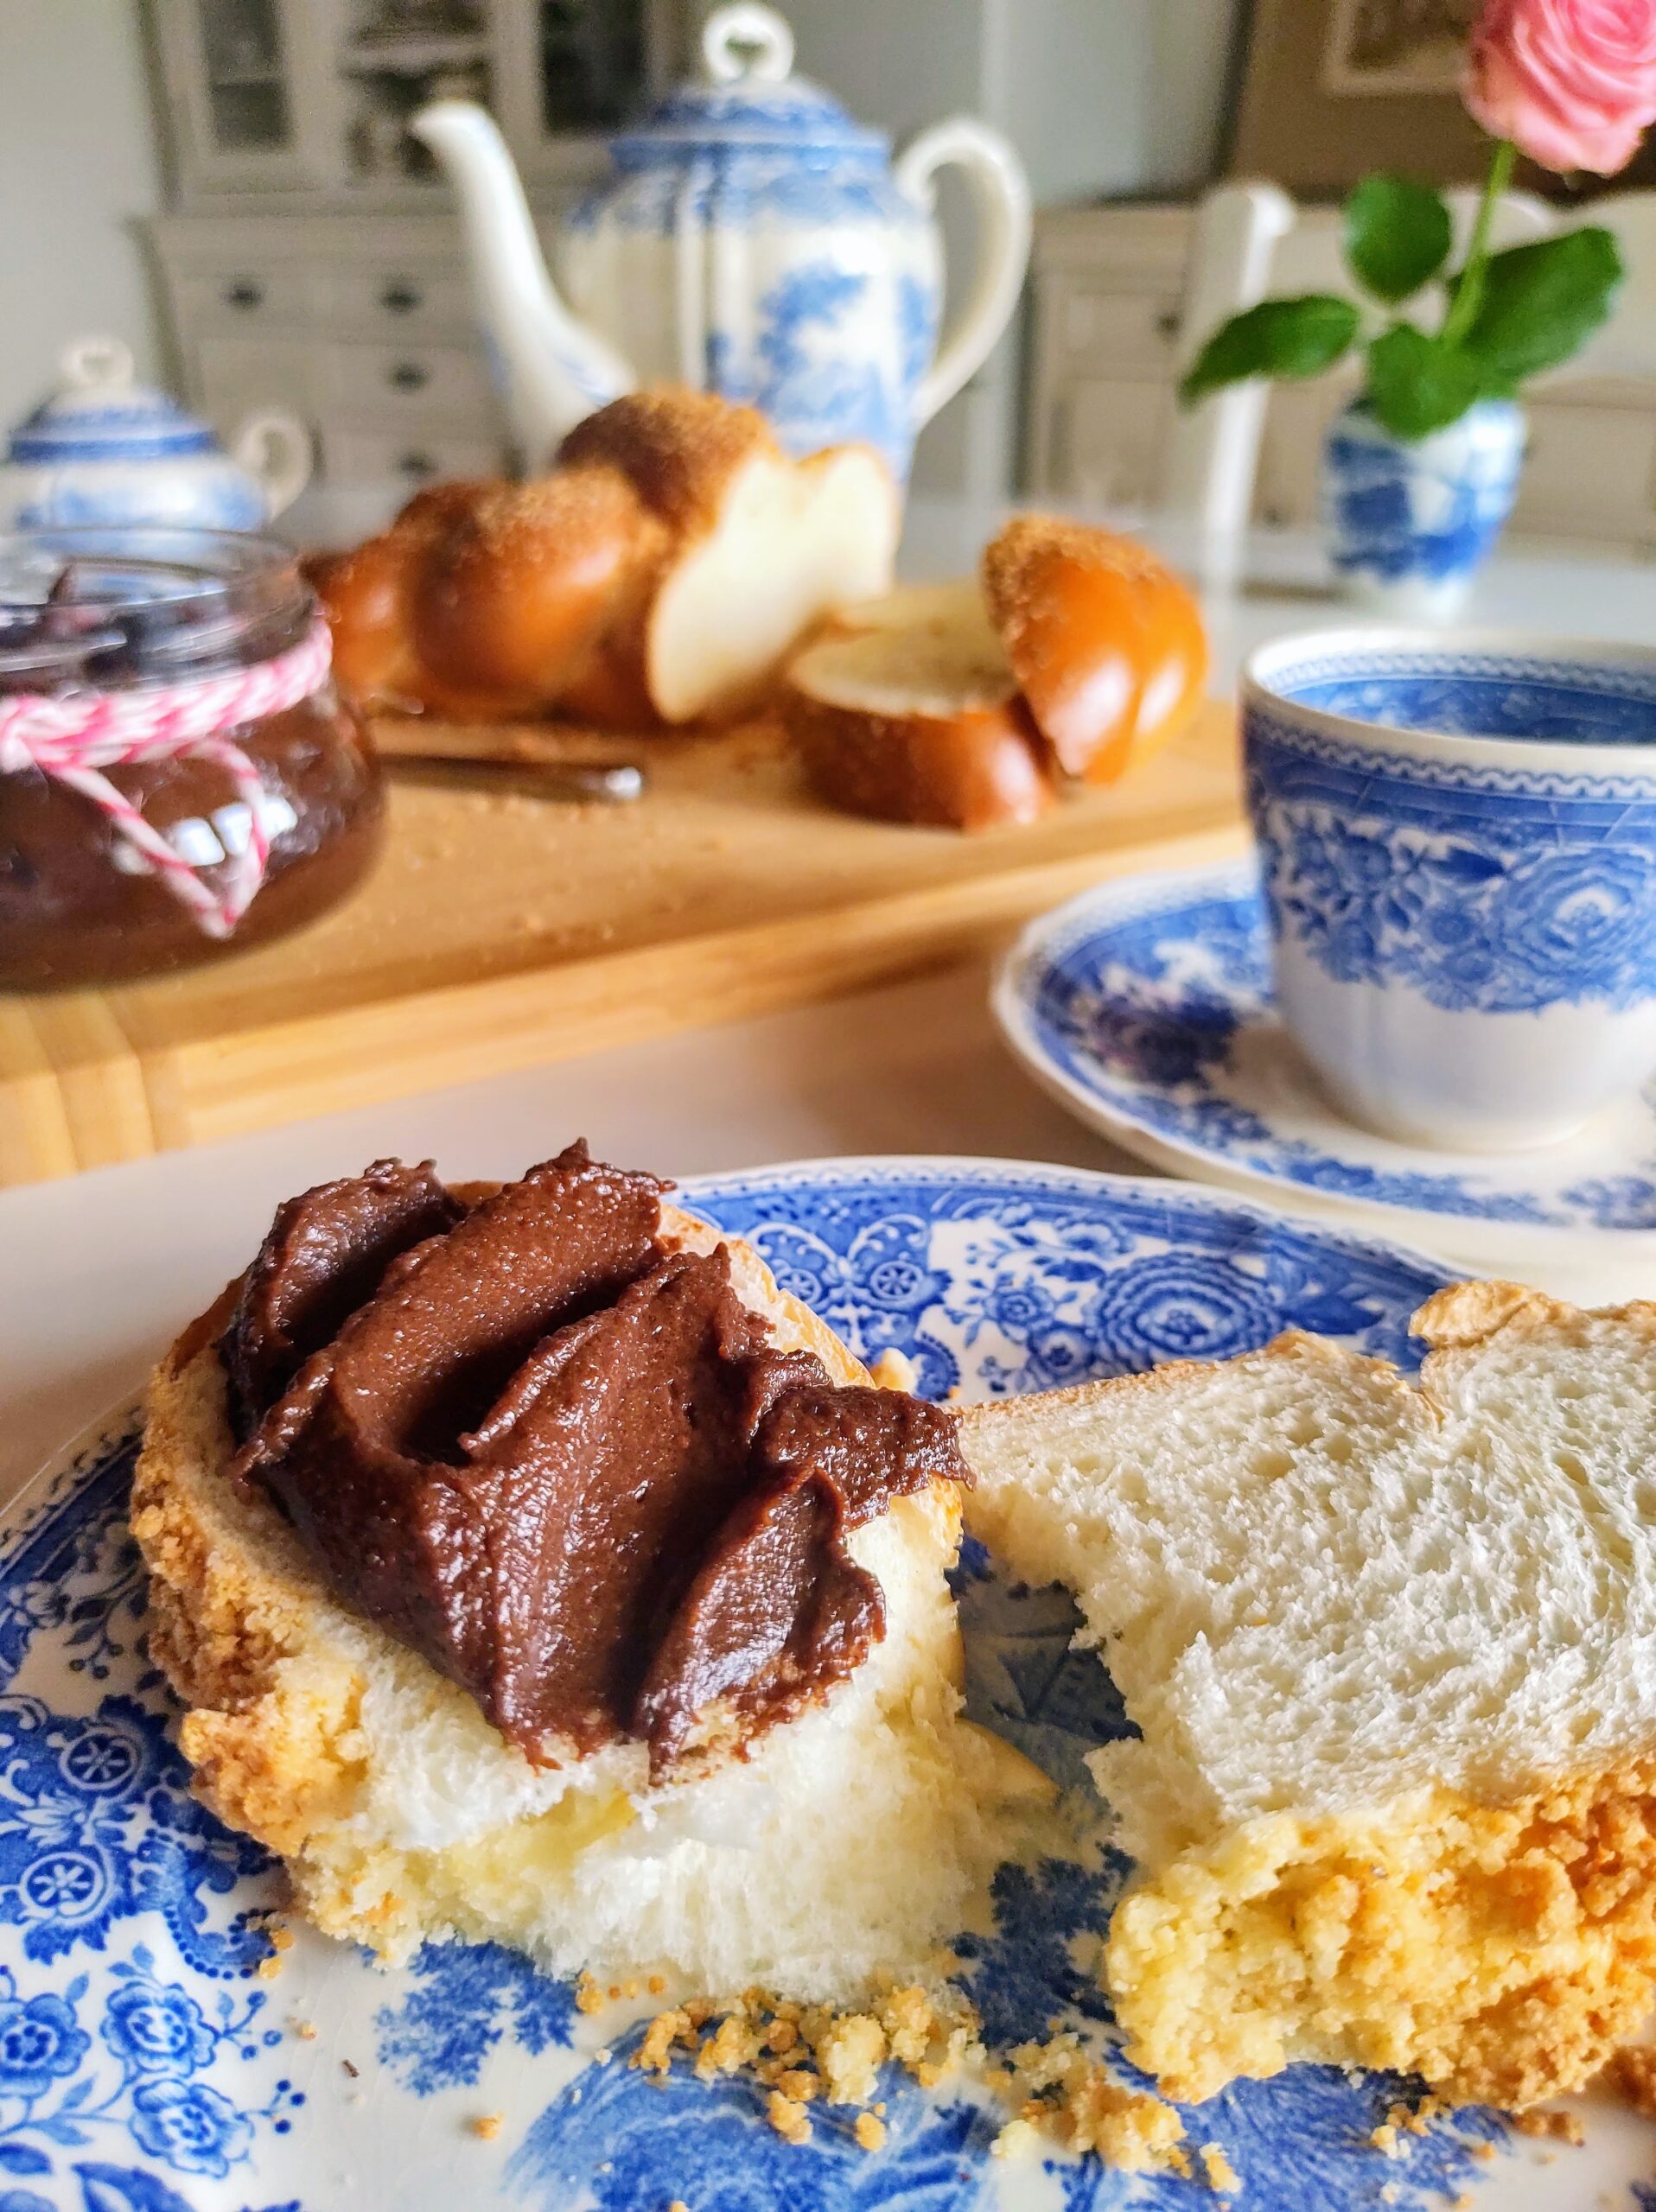 Obrazek przedstawia stół zastawiony do śniadania, na talerzu kromka chałki z kremem czekoladowym.